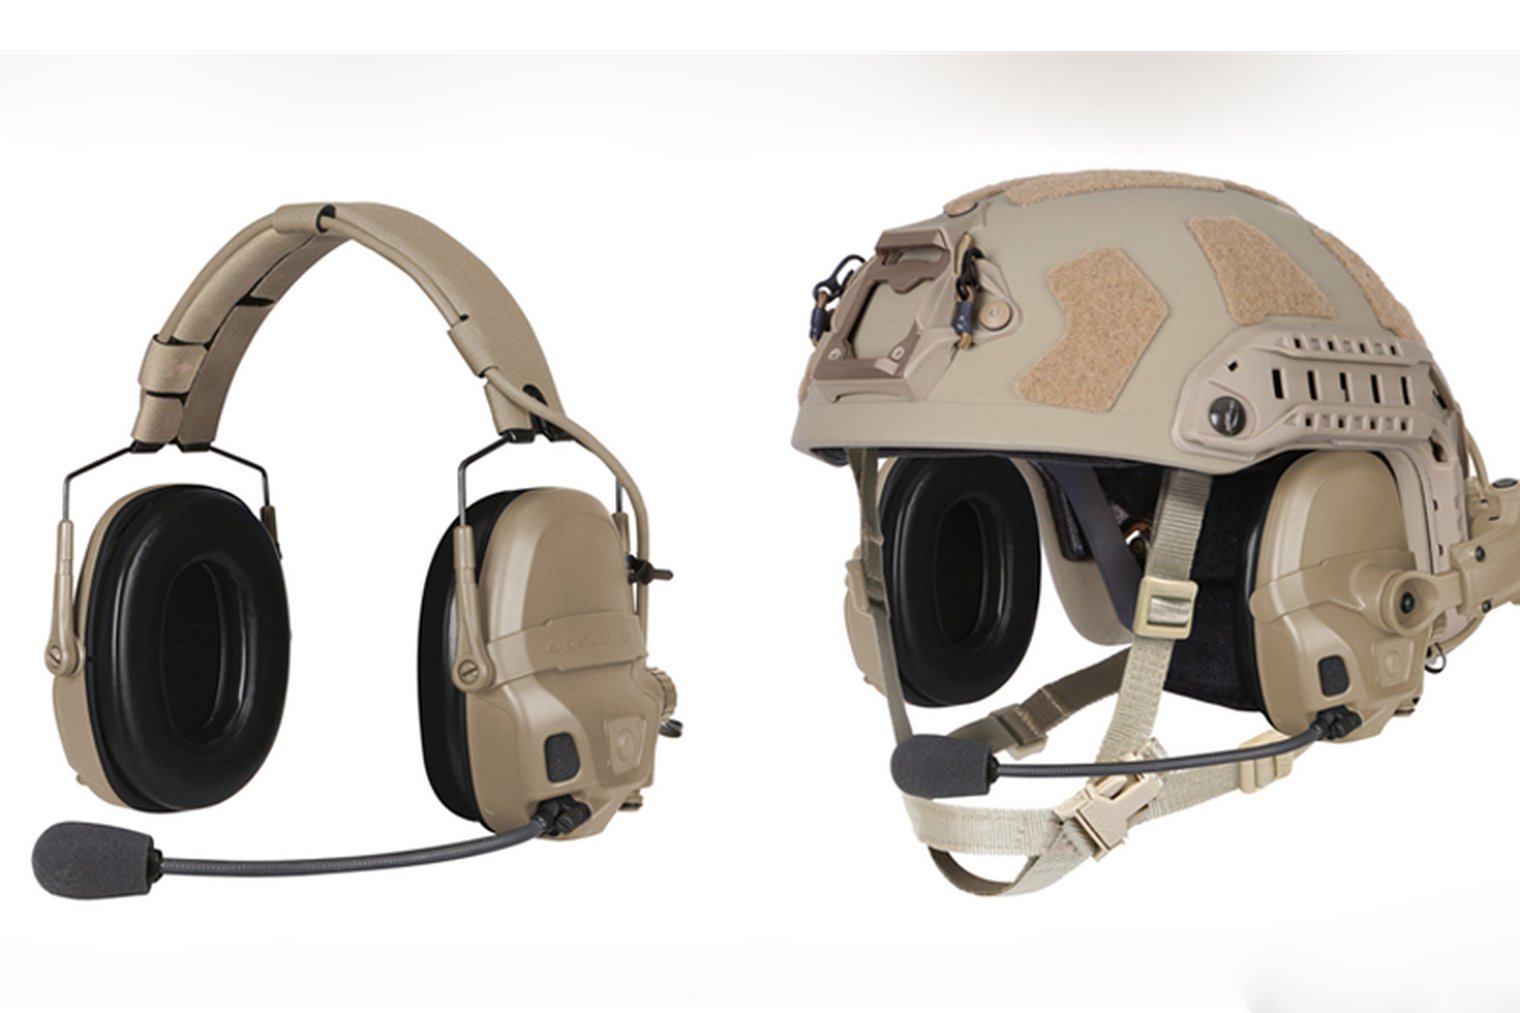 Шлемы и связь USSOCOM. Программы SPEAR: MICH, FTHS, AHST.